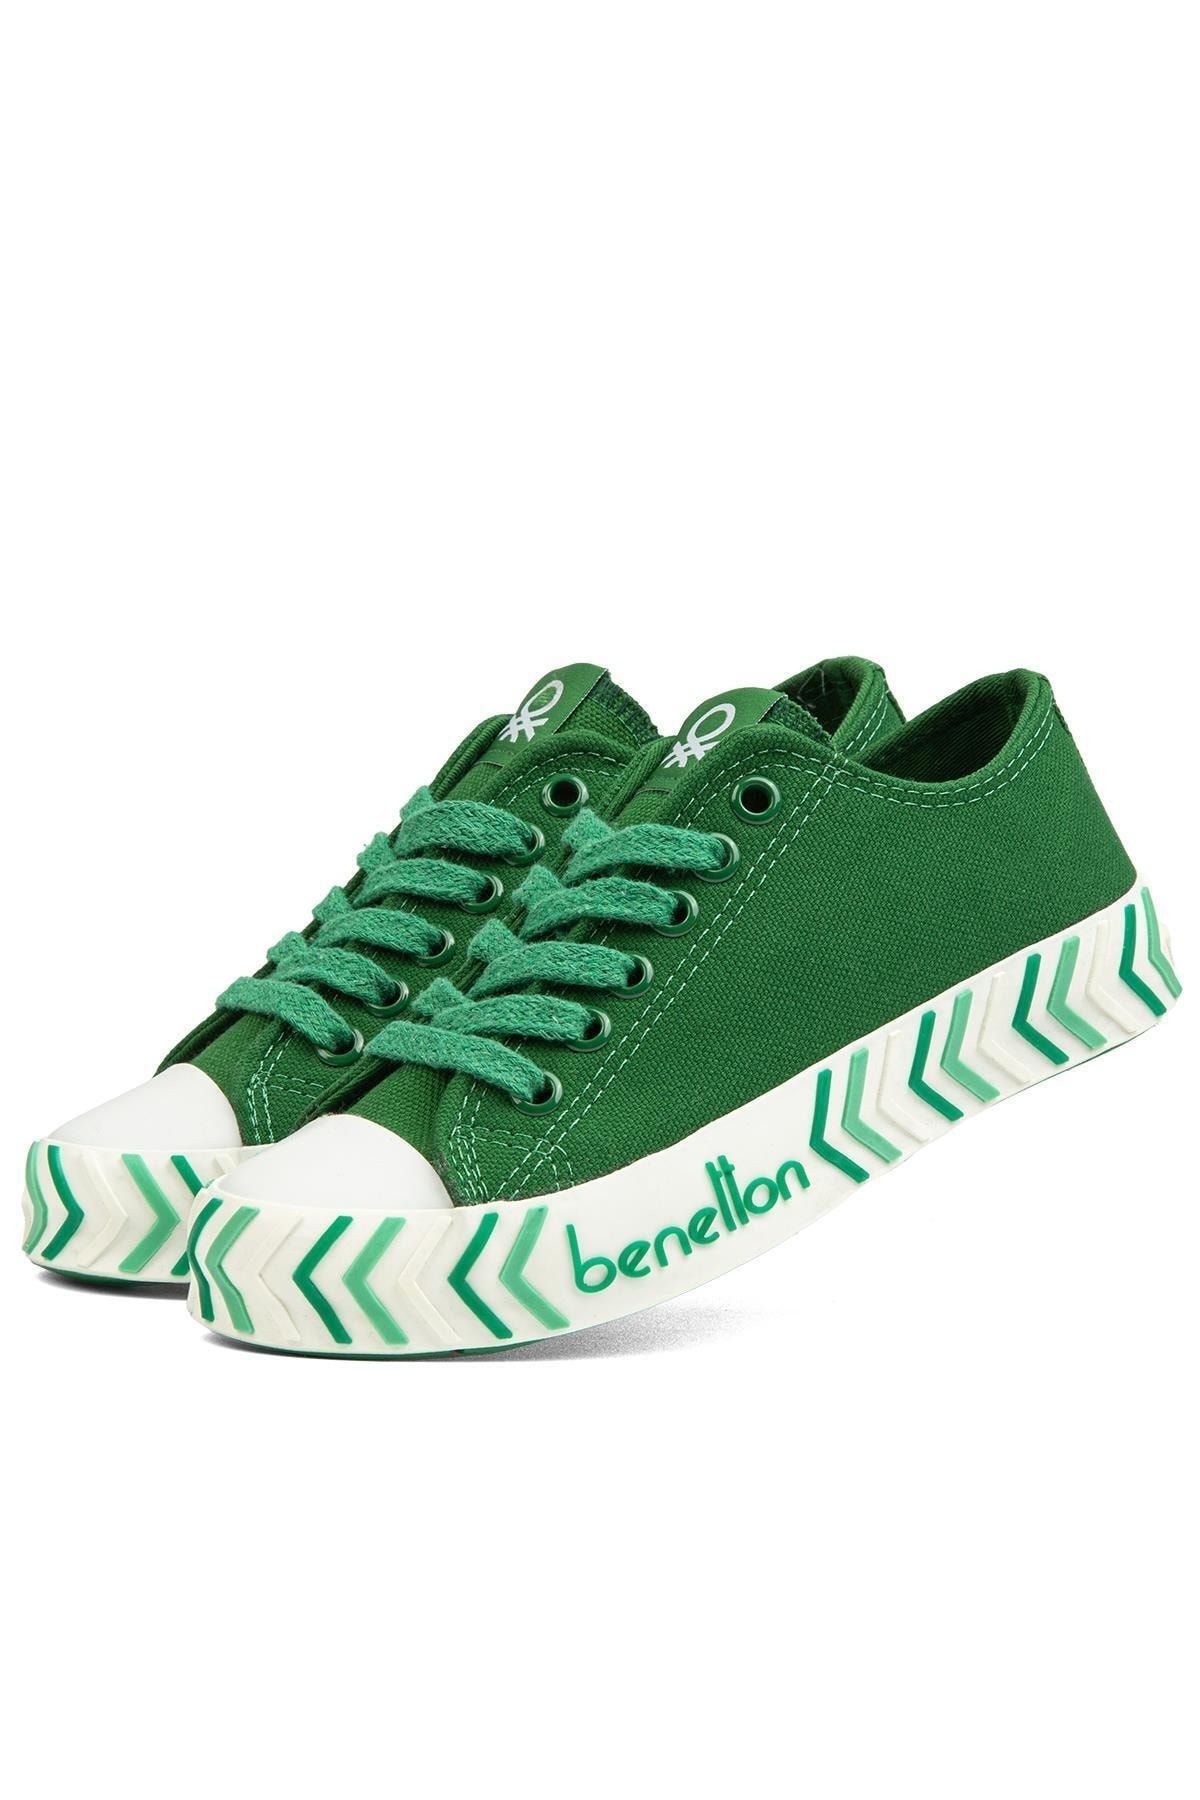 Benetton ® | BN-90624- Yesil - Kadın Spor Ayakkabı